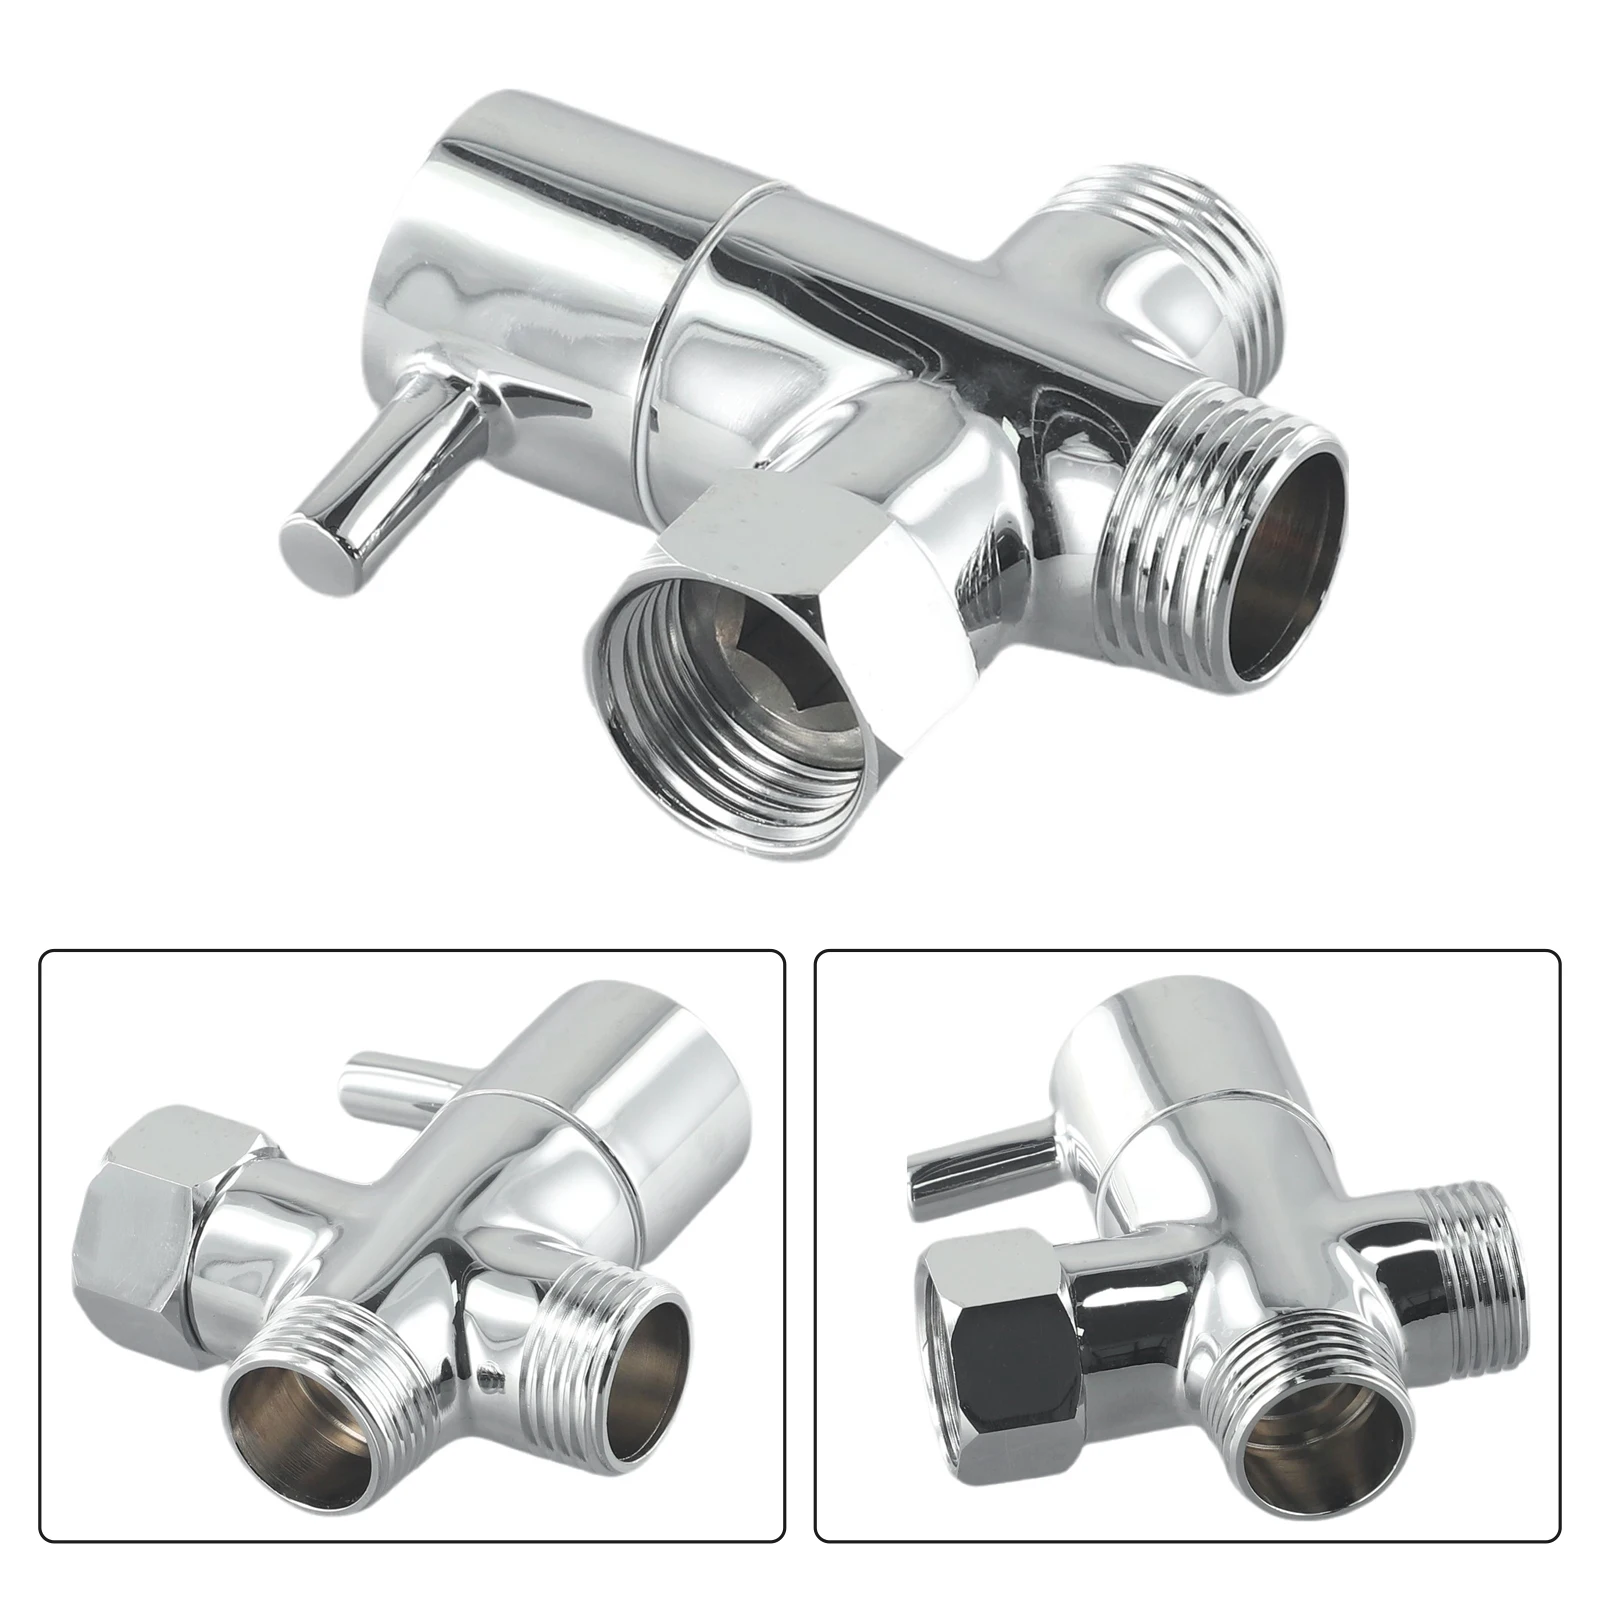 

Brass Switch Faucet Adapter Kitchen Sink Splitter Diverter Valve Water Tap 3 Way Tee Connector Bidet Shower Kichen Accessories